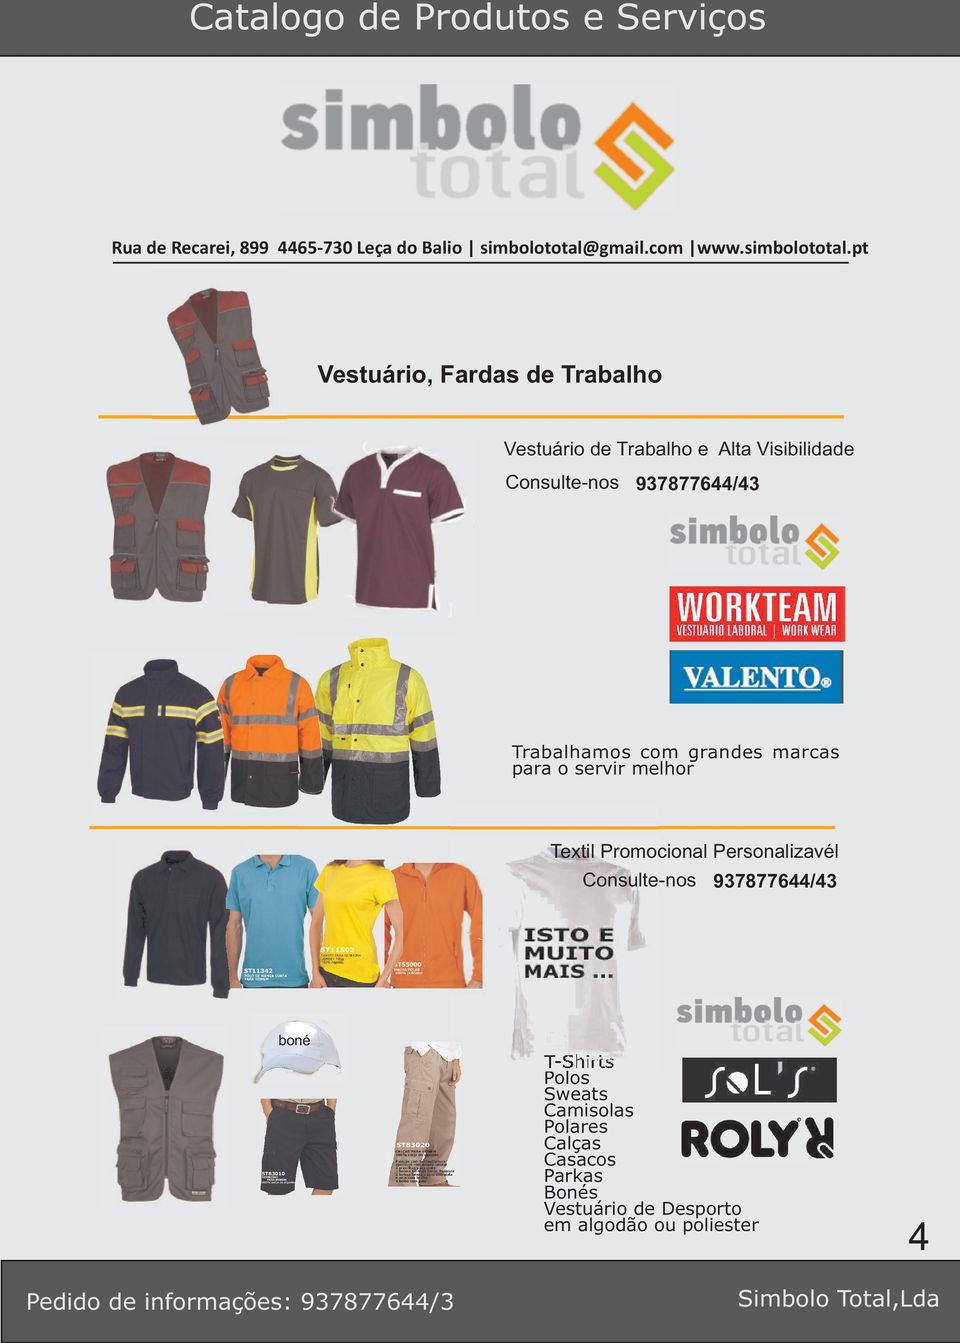 Textil Promocional Personalizavél Consulte-nos 937877644/43 boné T-Shirts Polos